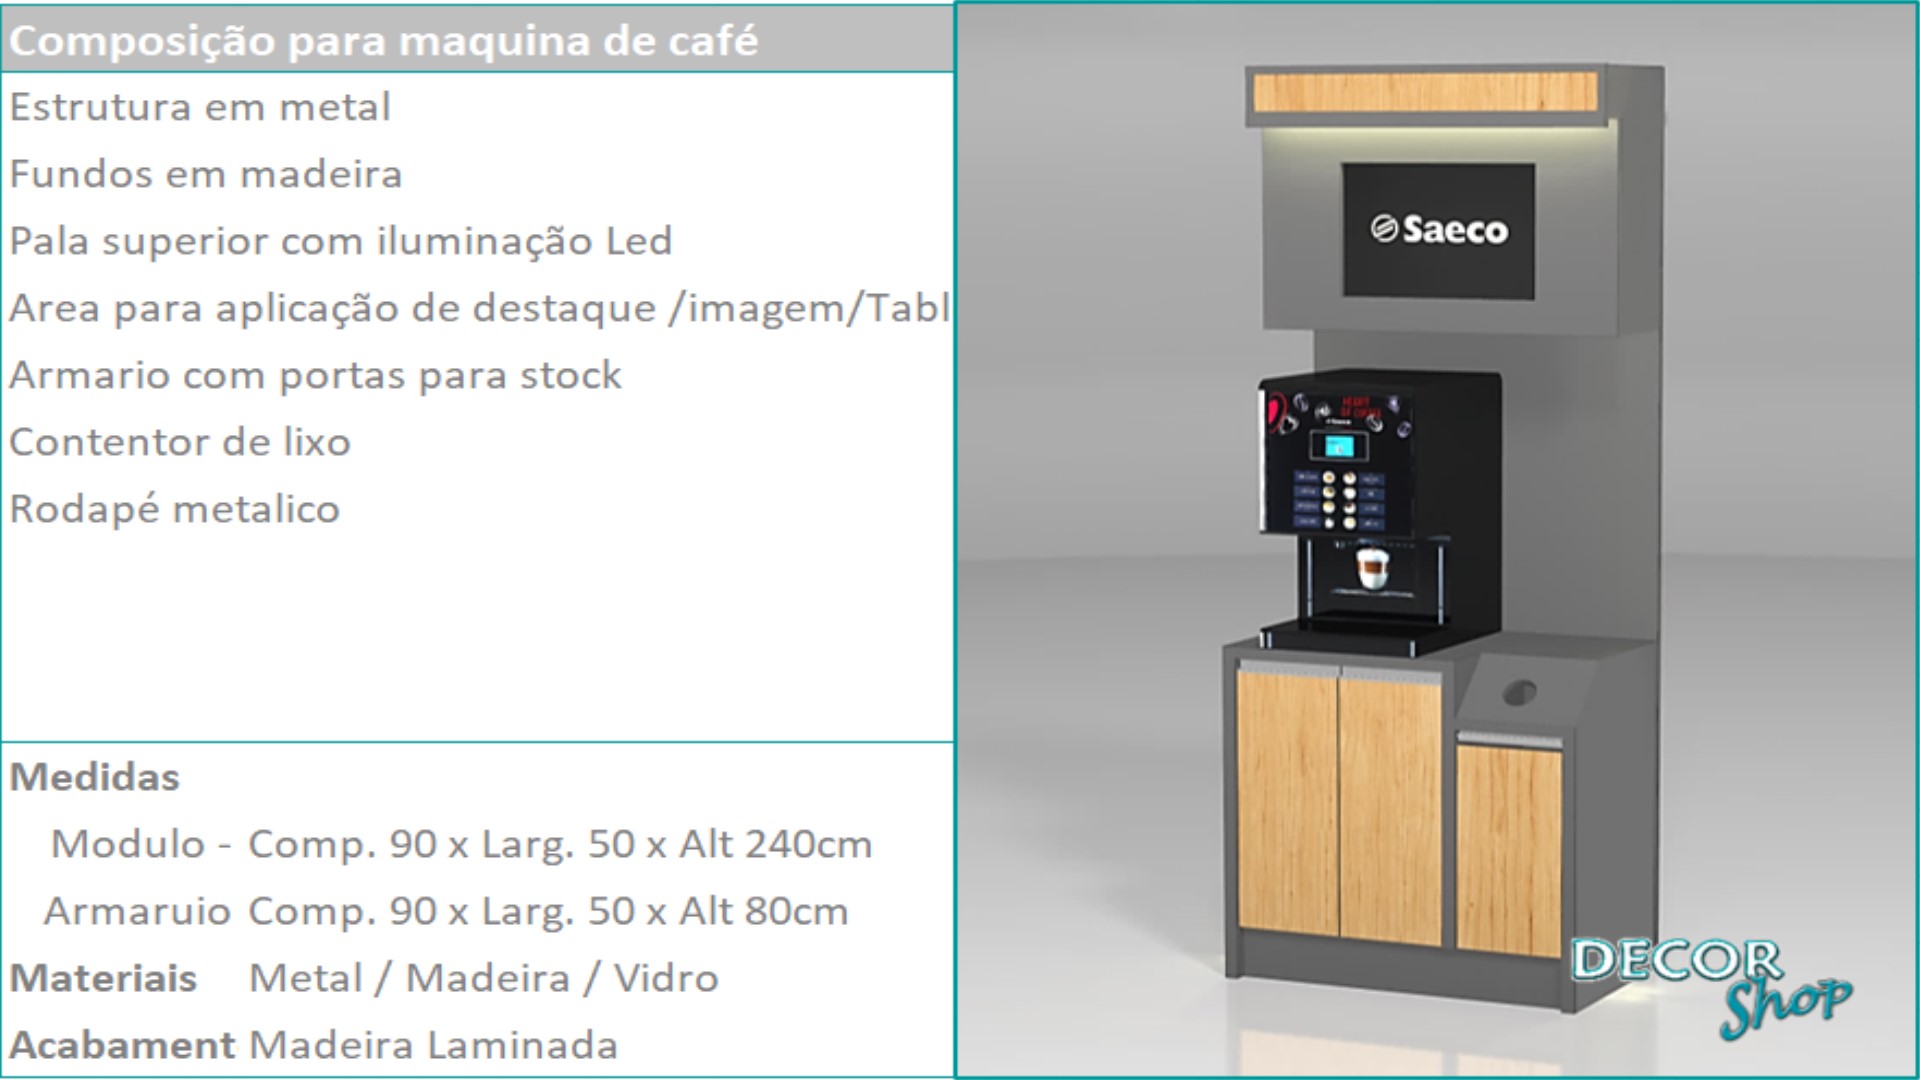 15 - Mod para Maquina Café